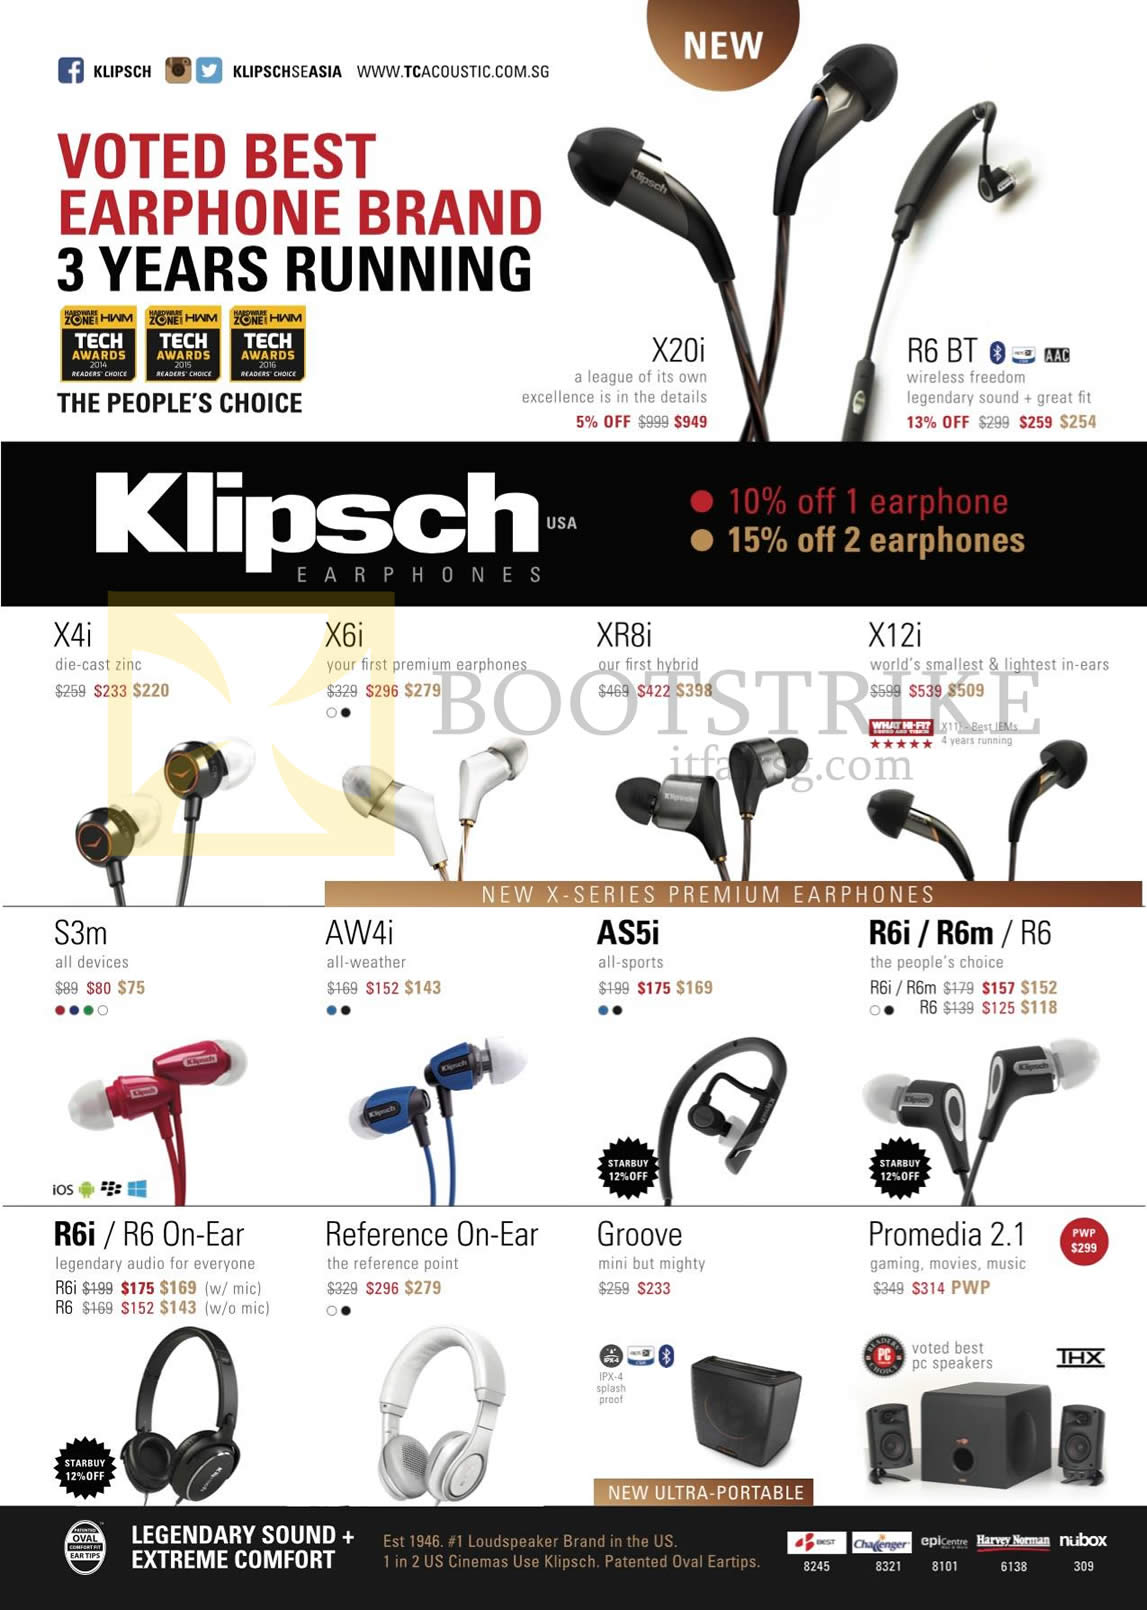 IT SHOW 2016 price list image brochure of Klipsch Earphones, Headphones, X4i, X6i, X20i, XR8i, X12i, R6BT, S3m, AW4i, AS5i, R6i, R6m, R6, Reference On-Ear, Groove, Promedia 2.1 Speakers